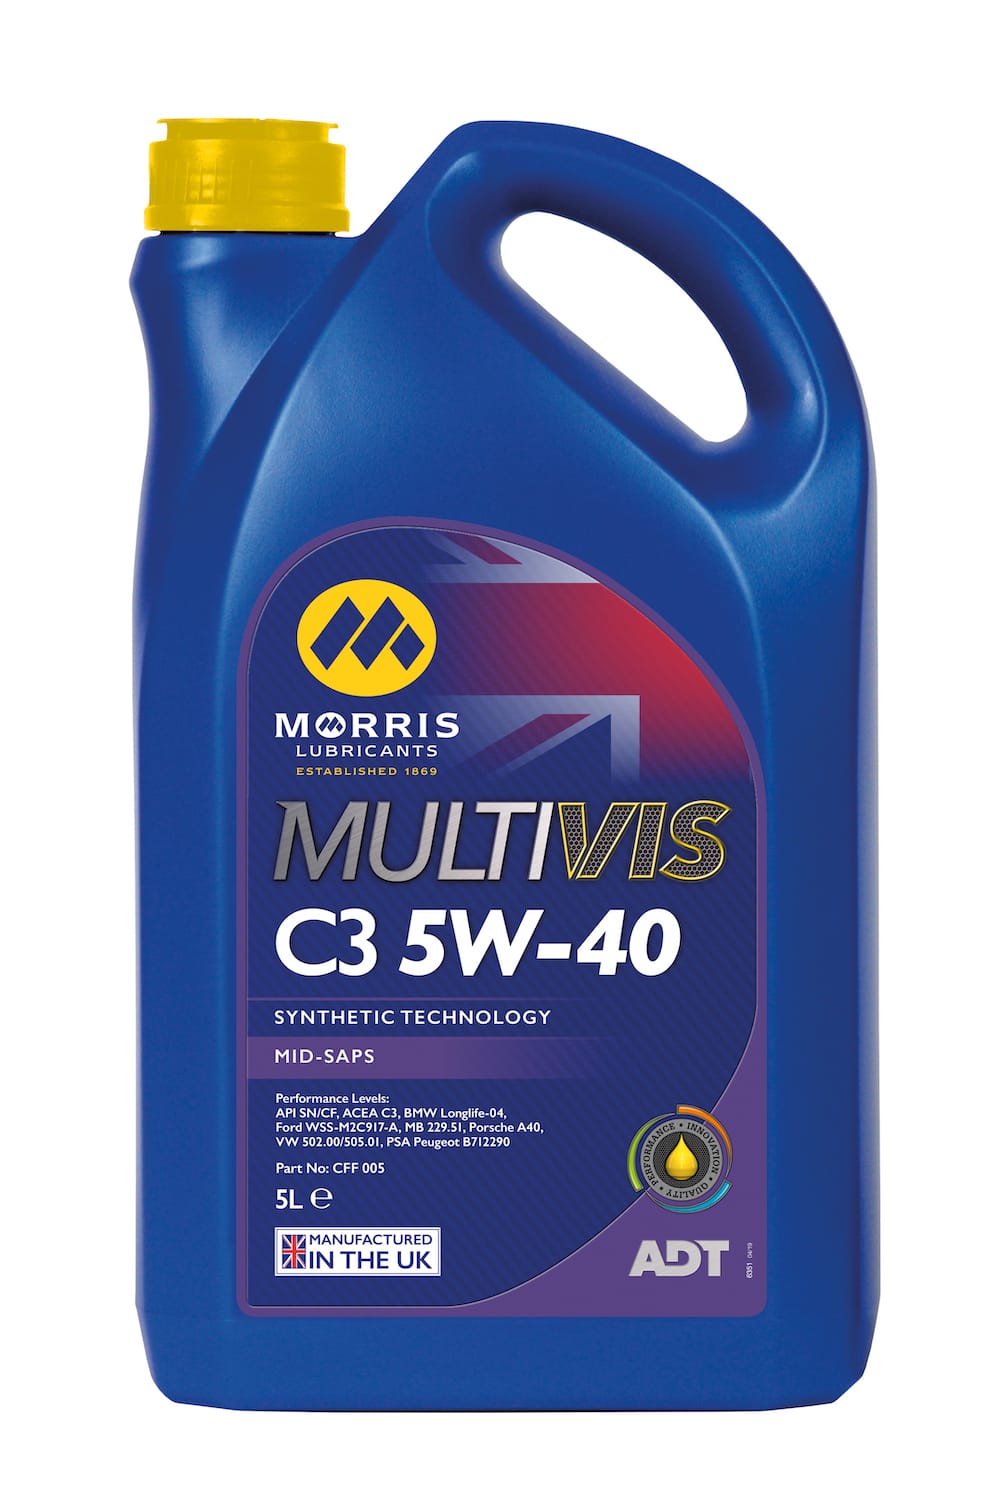 Multivis ADT C3 5W-40 